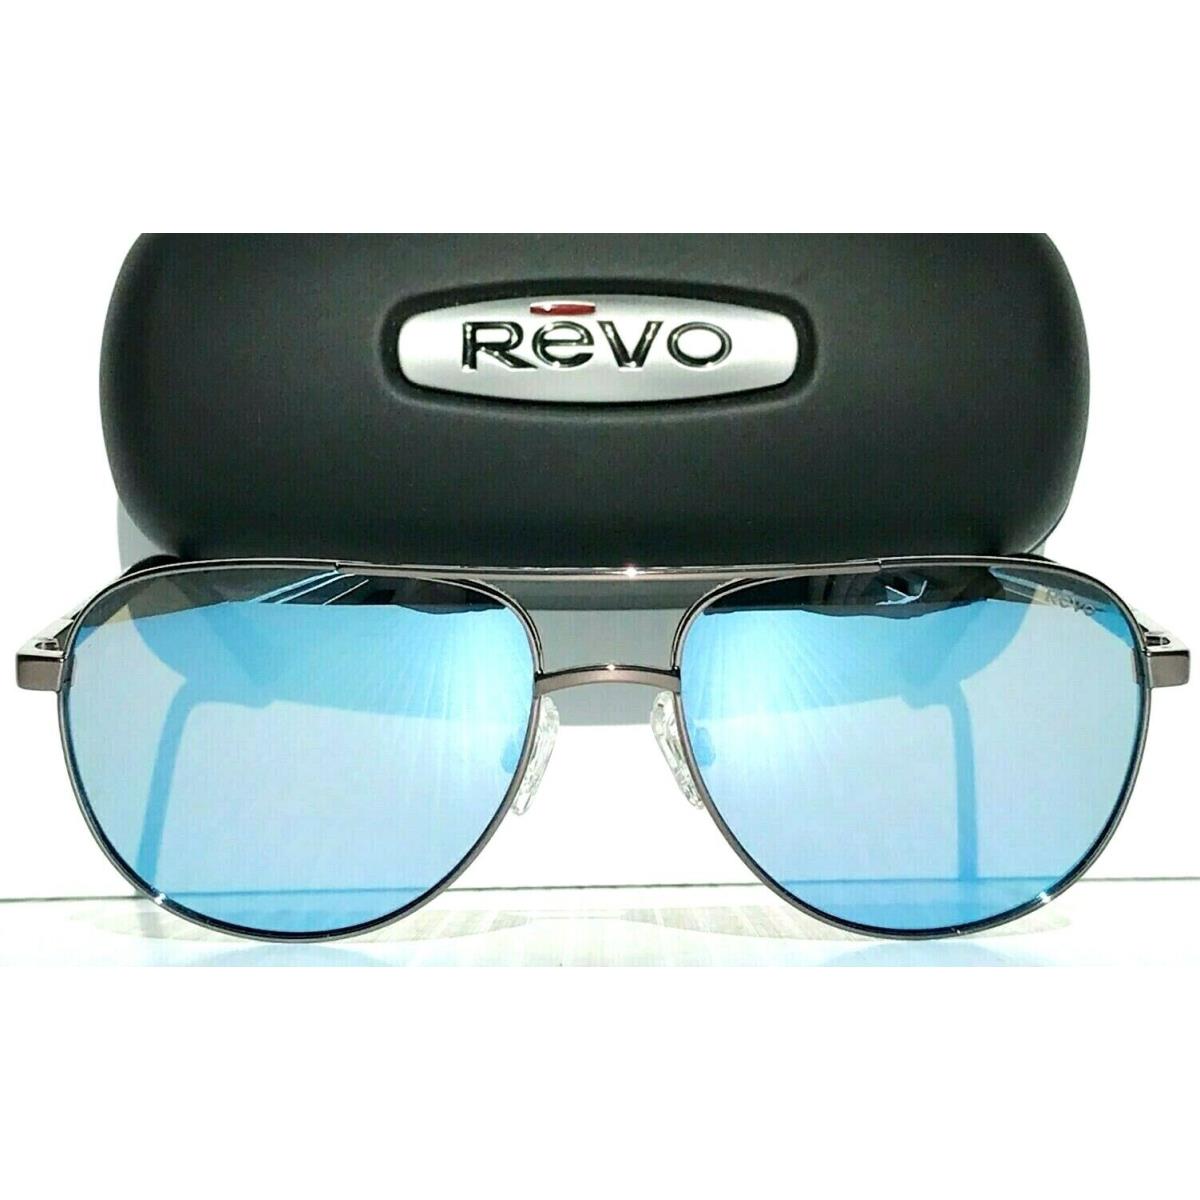 Revo sunglasses Conrad - Gray Frame, Blue Lens